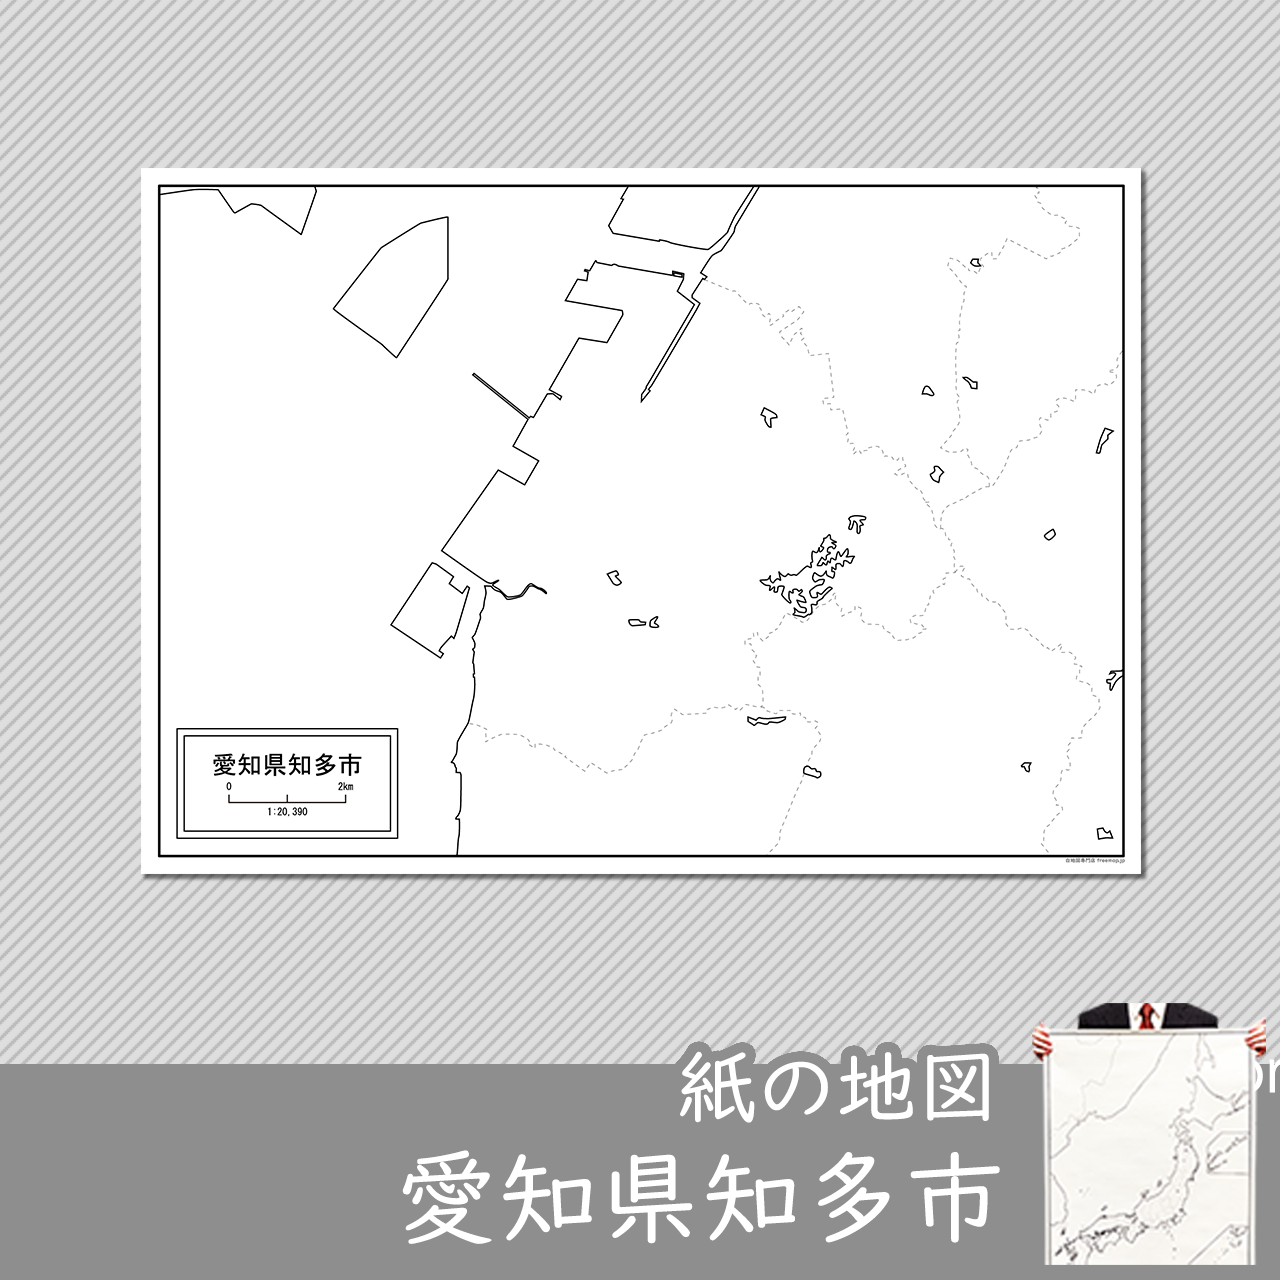 知多市の紙の白地図のサムネイル